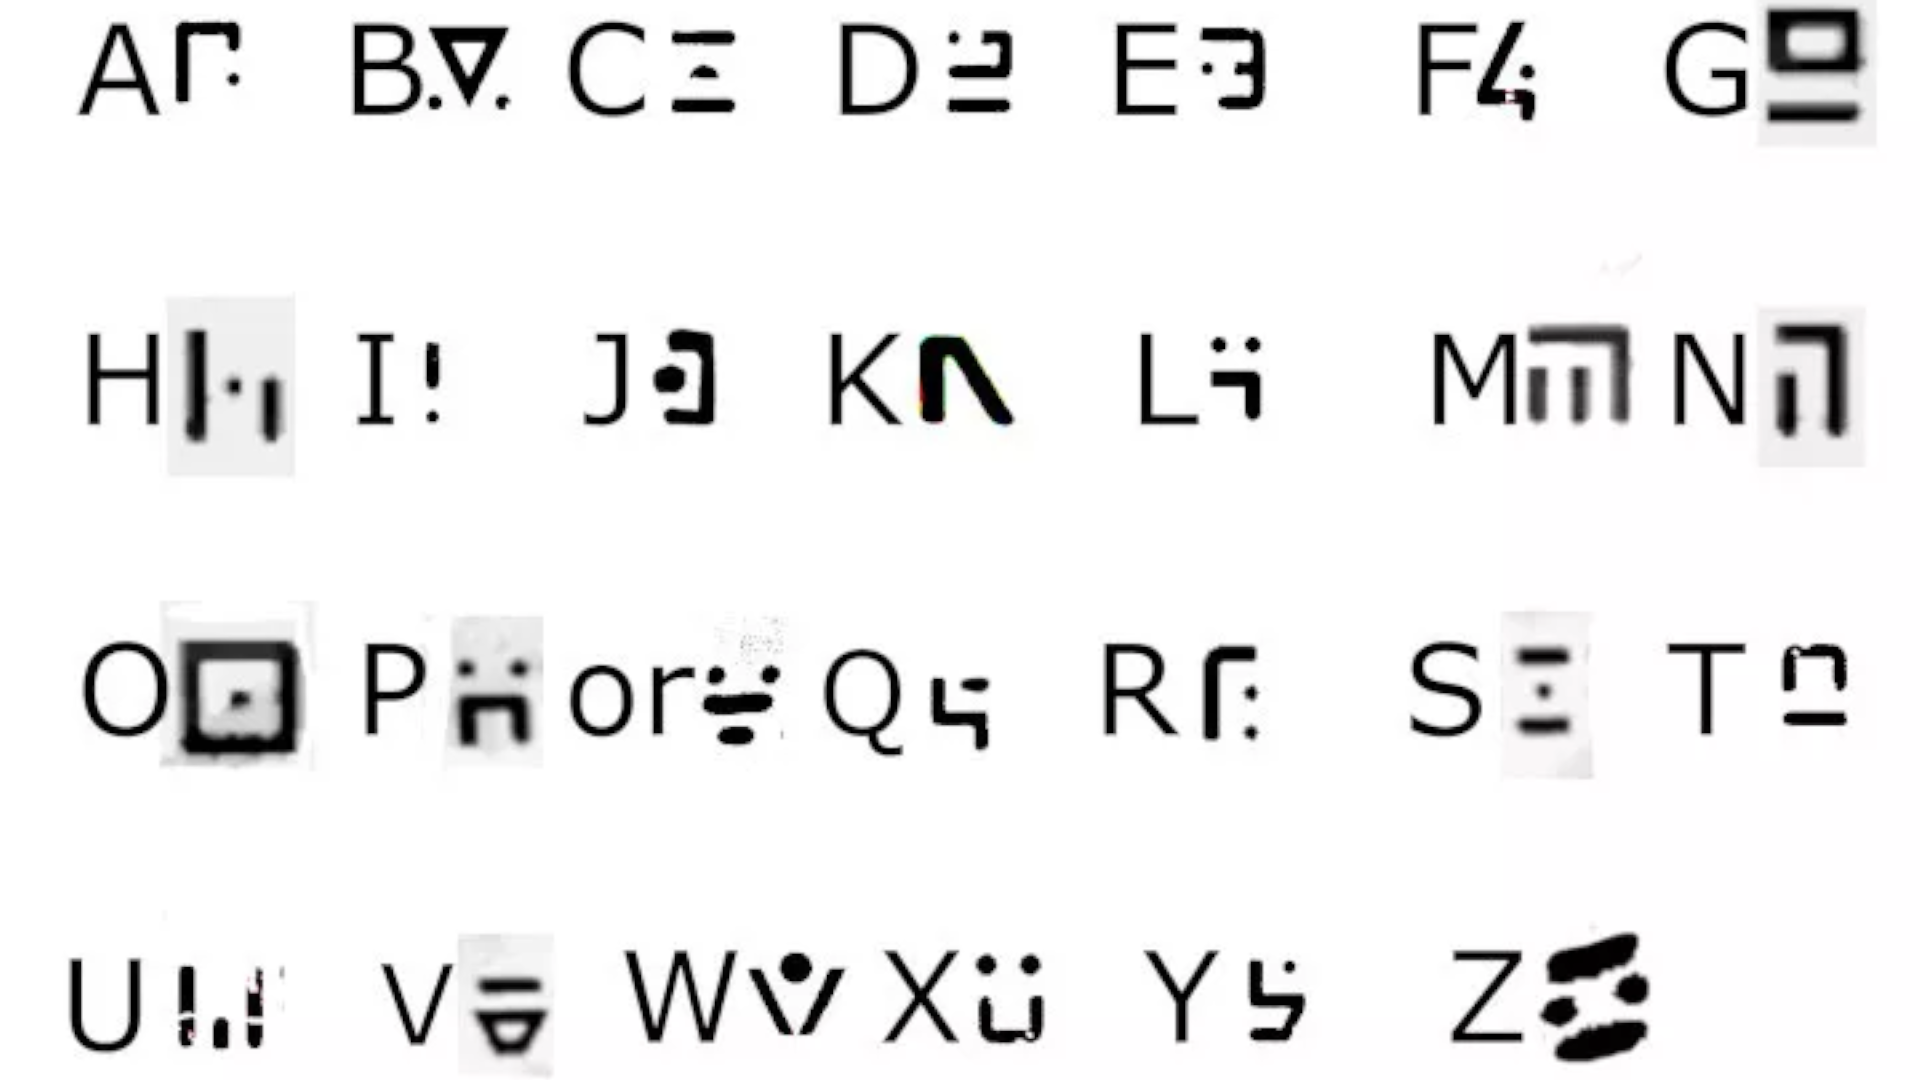 Шифр, используемый в Приблуда выложена английским алфавитом